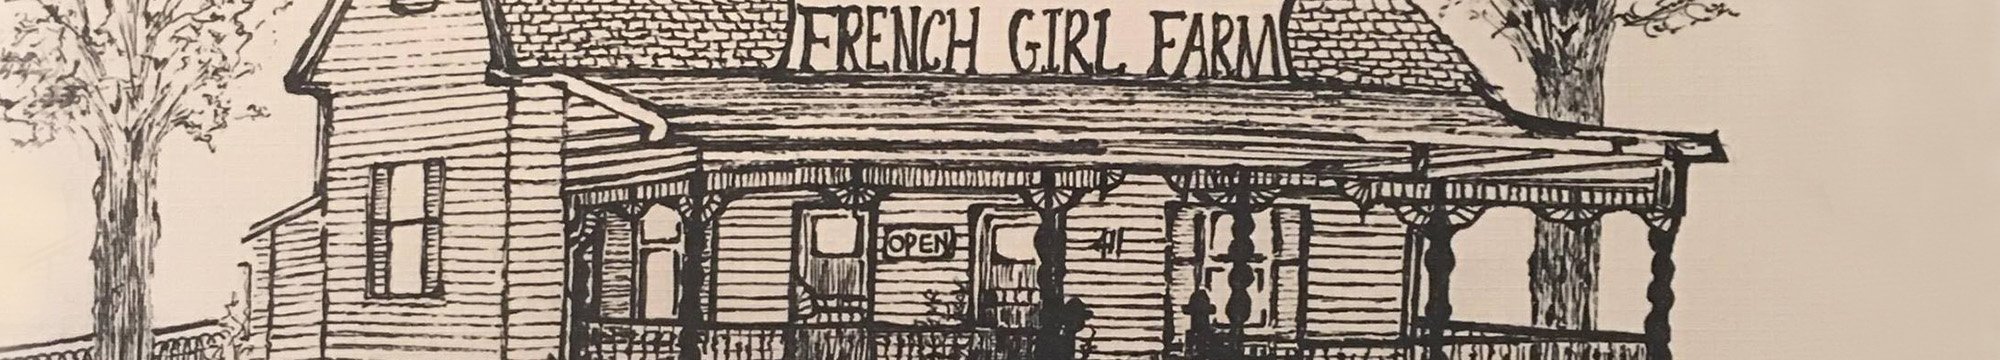 French Girl Farm